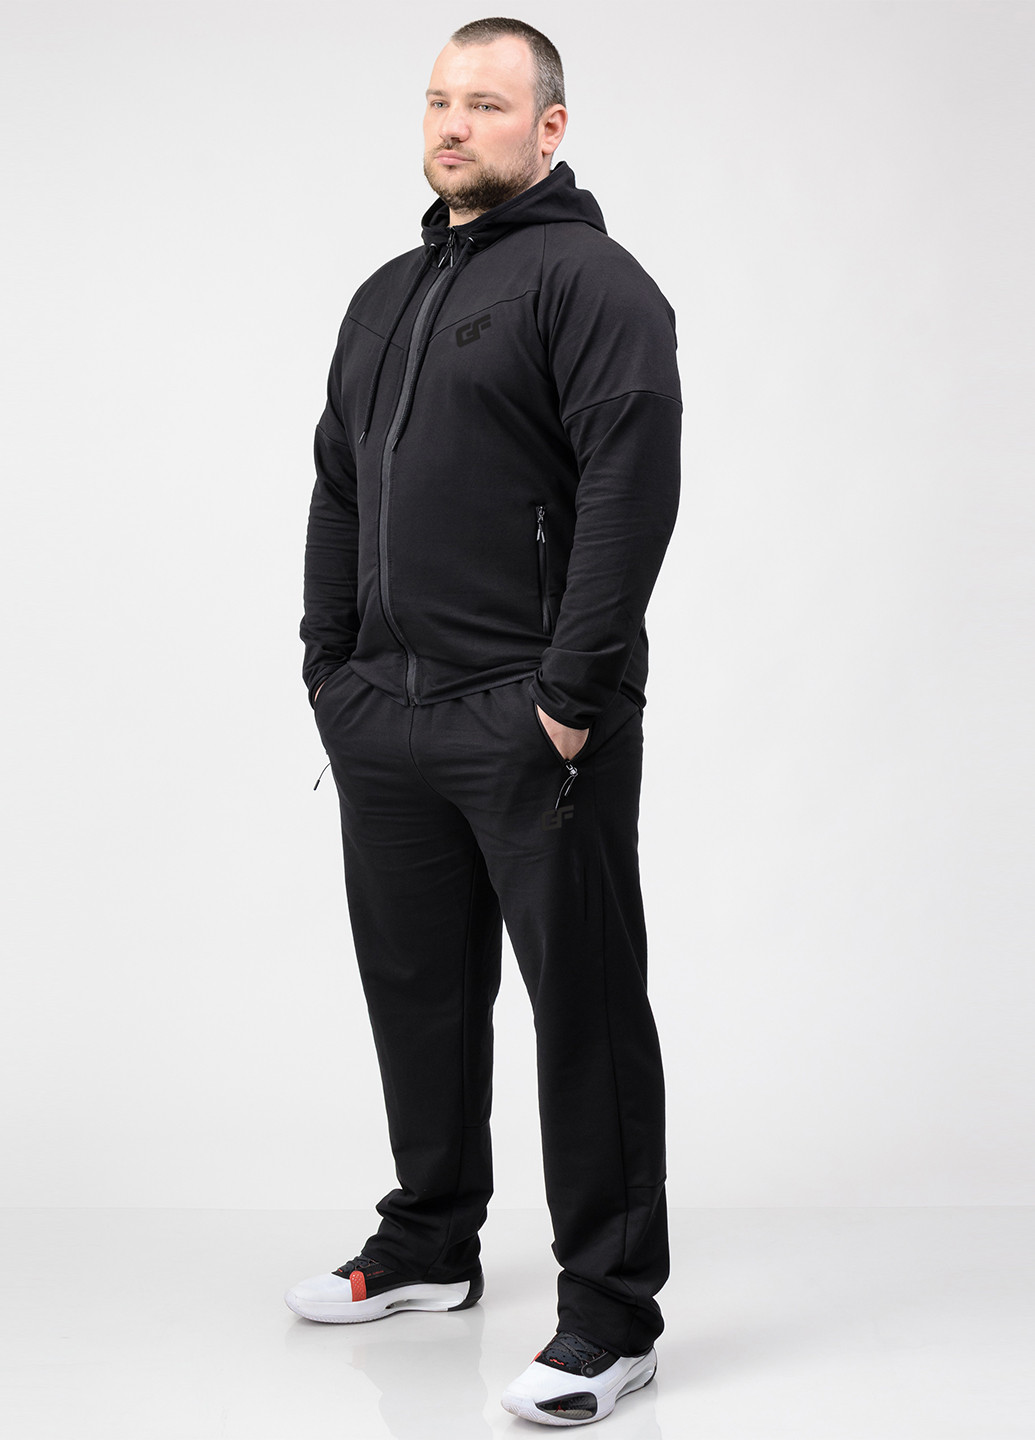 Черный демисезонный костюм (толстовка, брюки) брючный Go Fitness